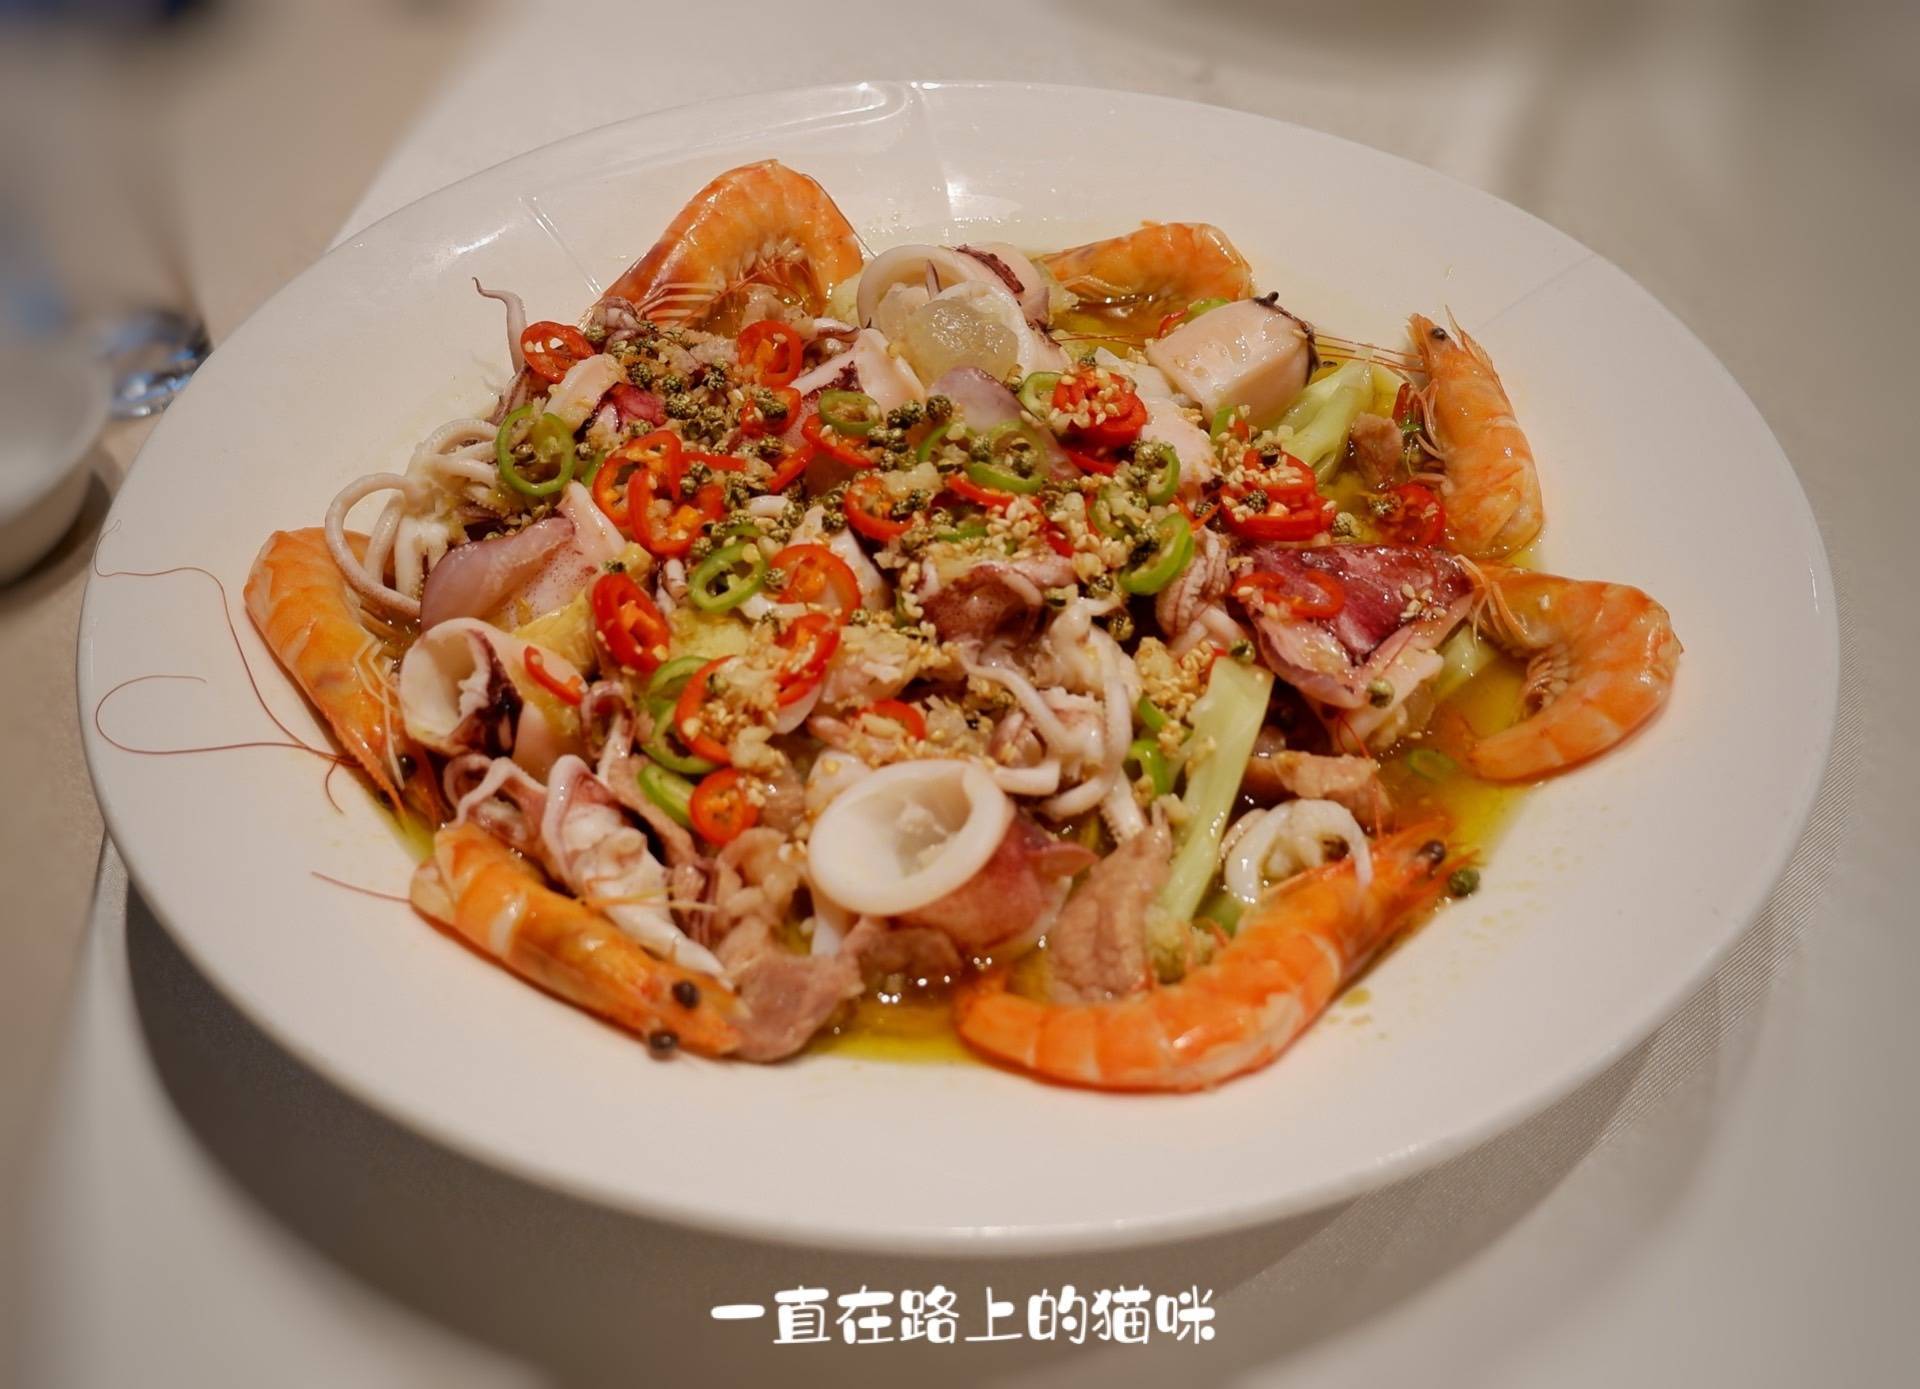 厦门美食聚集地明发商业广场里的美味海鲜餐厅: 百里鲜·吃海鲜!